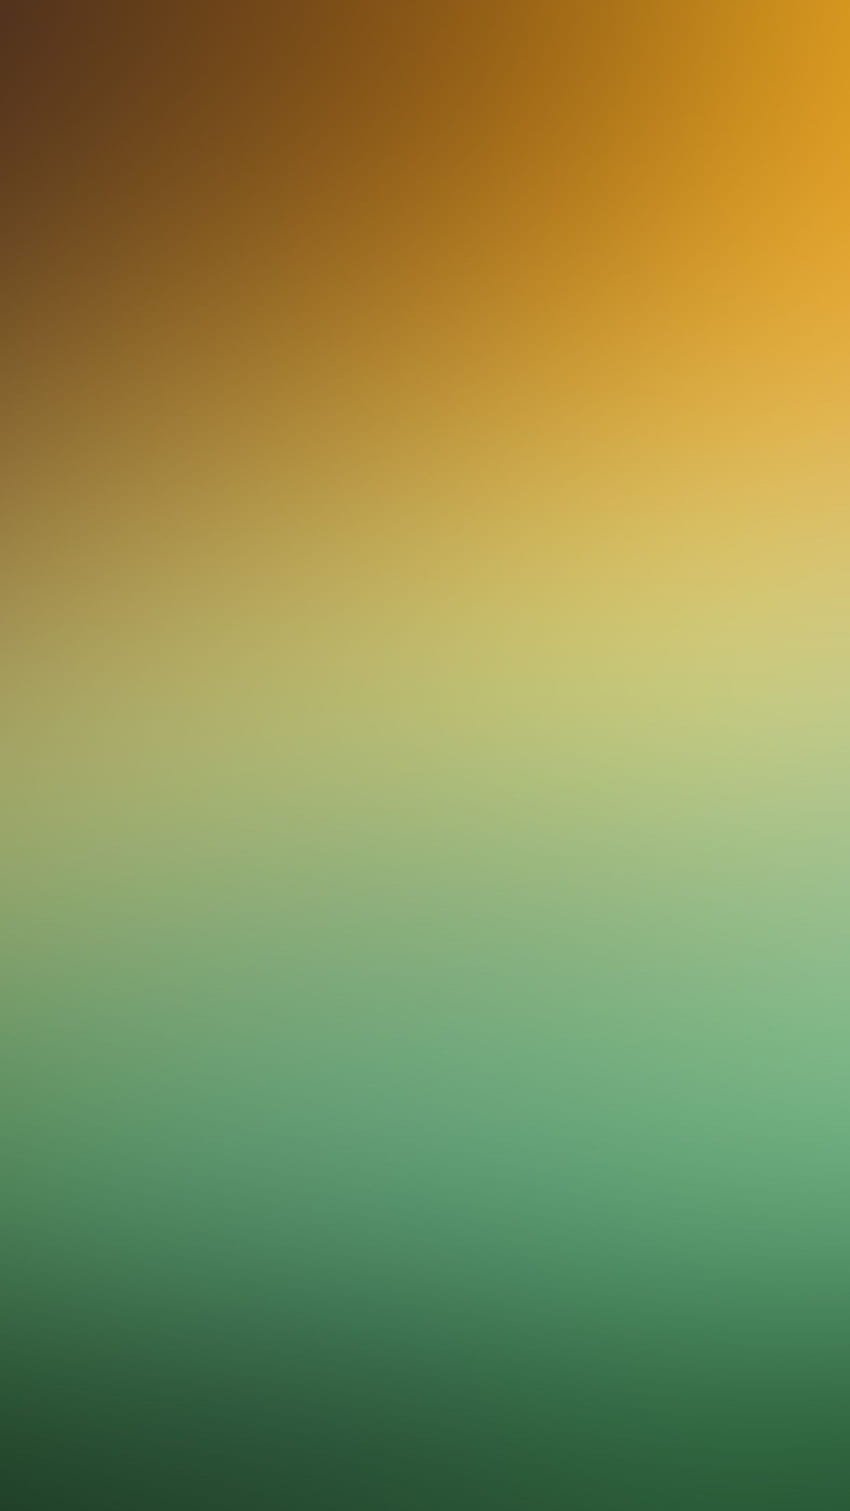 iPhone 6 - desenfoque de gradación suave verde amarillo fondo de pantalla del teléfono